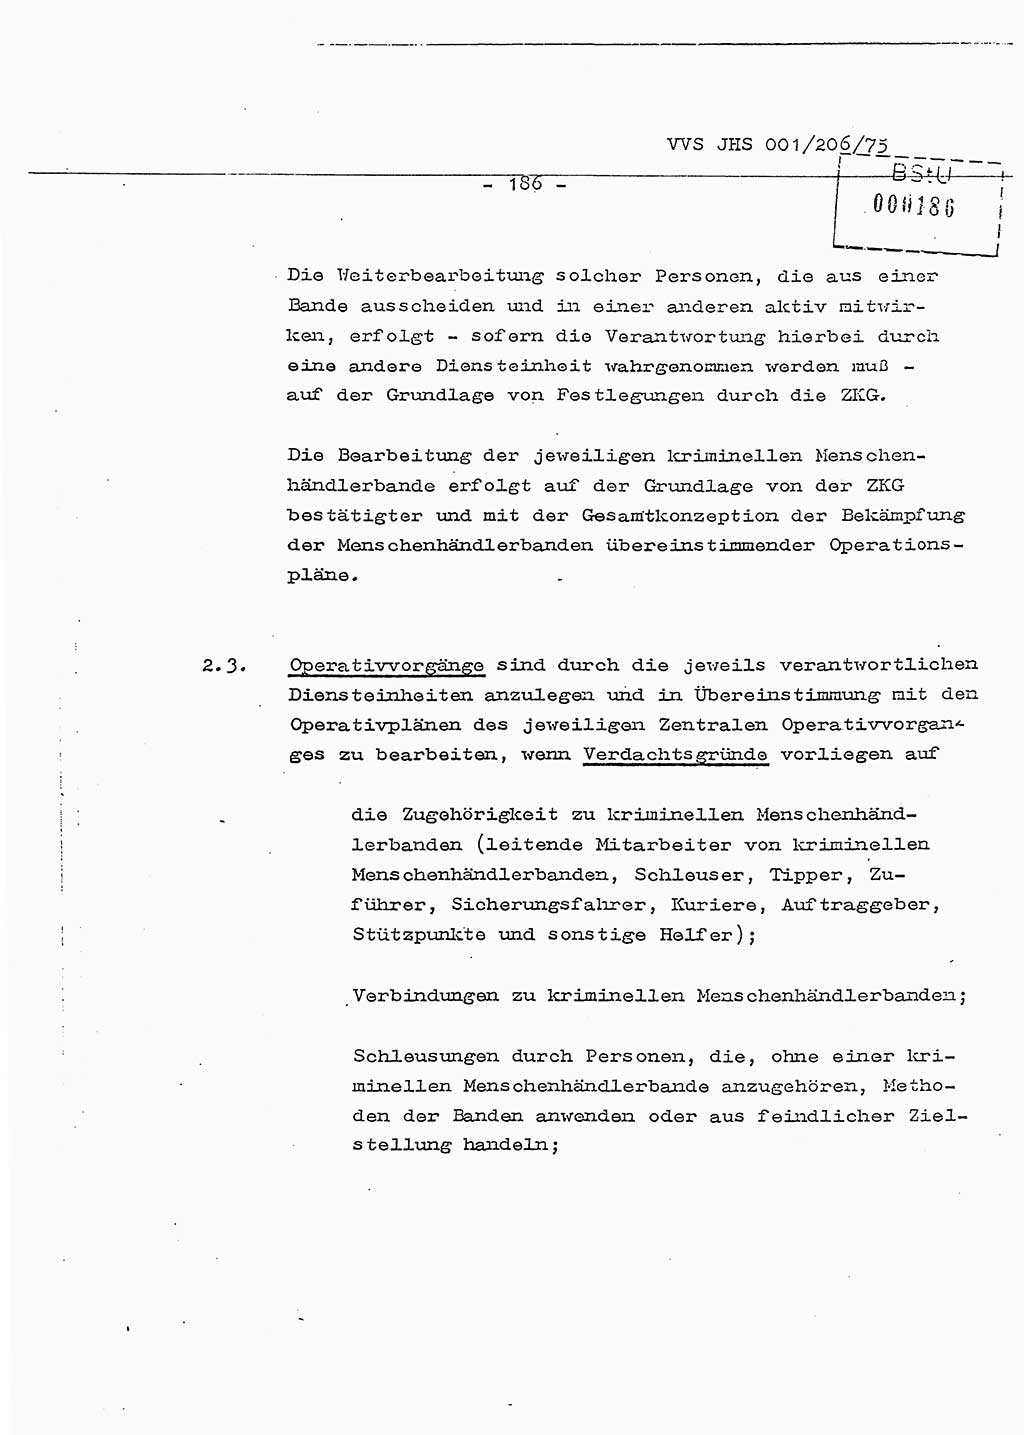 Dissertation Generalmajor Manfred Hummitzsch (Leiter der BV Leipzig), Generalmajor Heinz Fiedler (HA Ⅵ), Oberst Rolf Fister (HA Ⅸ), Ministerium für Staatssicherheit (MfS) [Deutsche Demokratische Republik (DDR)], Juristische Hochschule (JHS), Vertrauliche Verschlußsache (VVS) 001-206/75, Potsdam 1975, Seite 186 (Diss. MfS DDR JHS VVS 001-206/75 1975, S. 186)